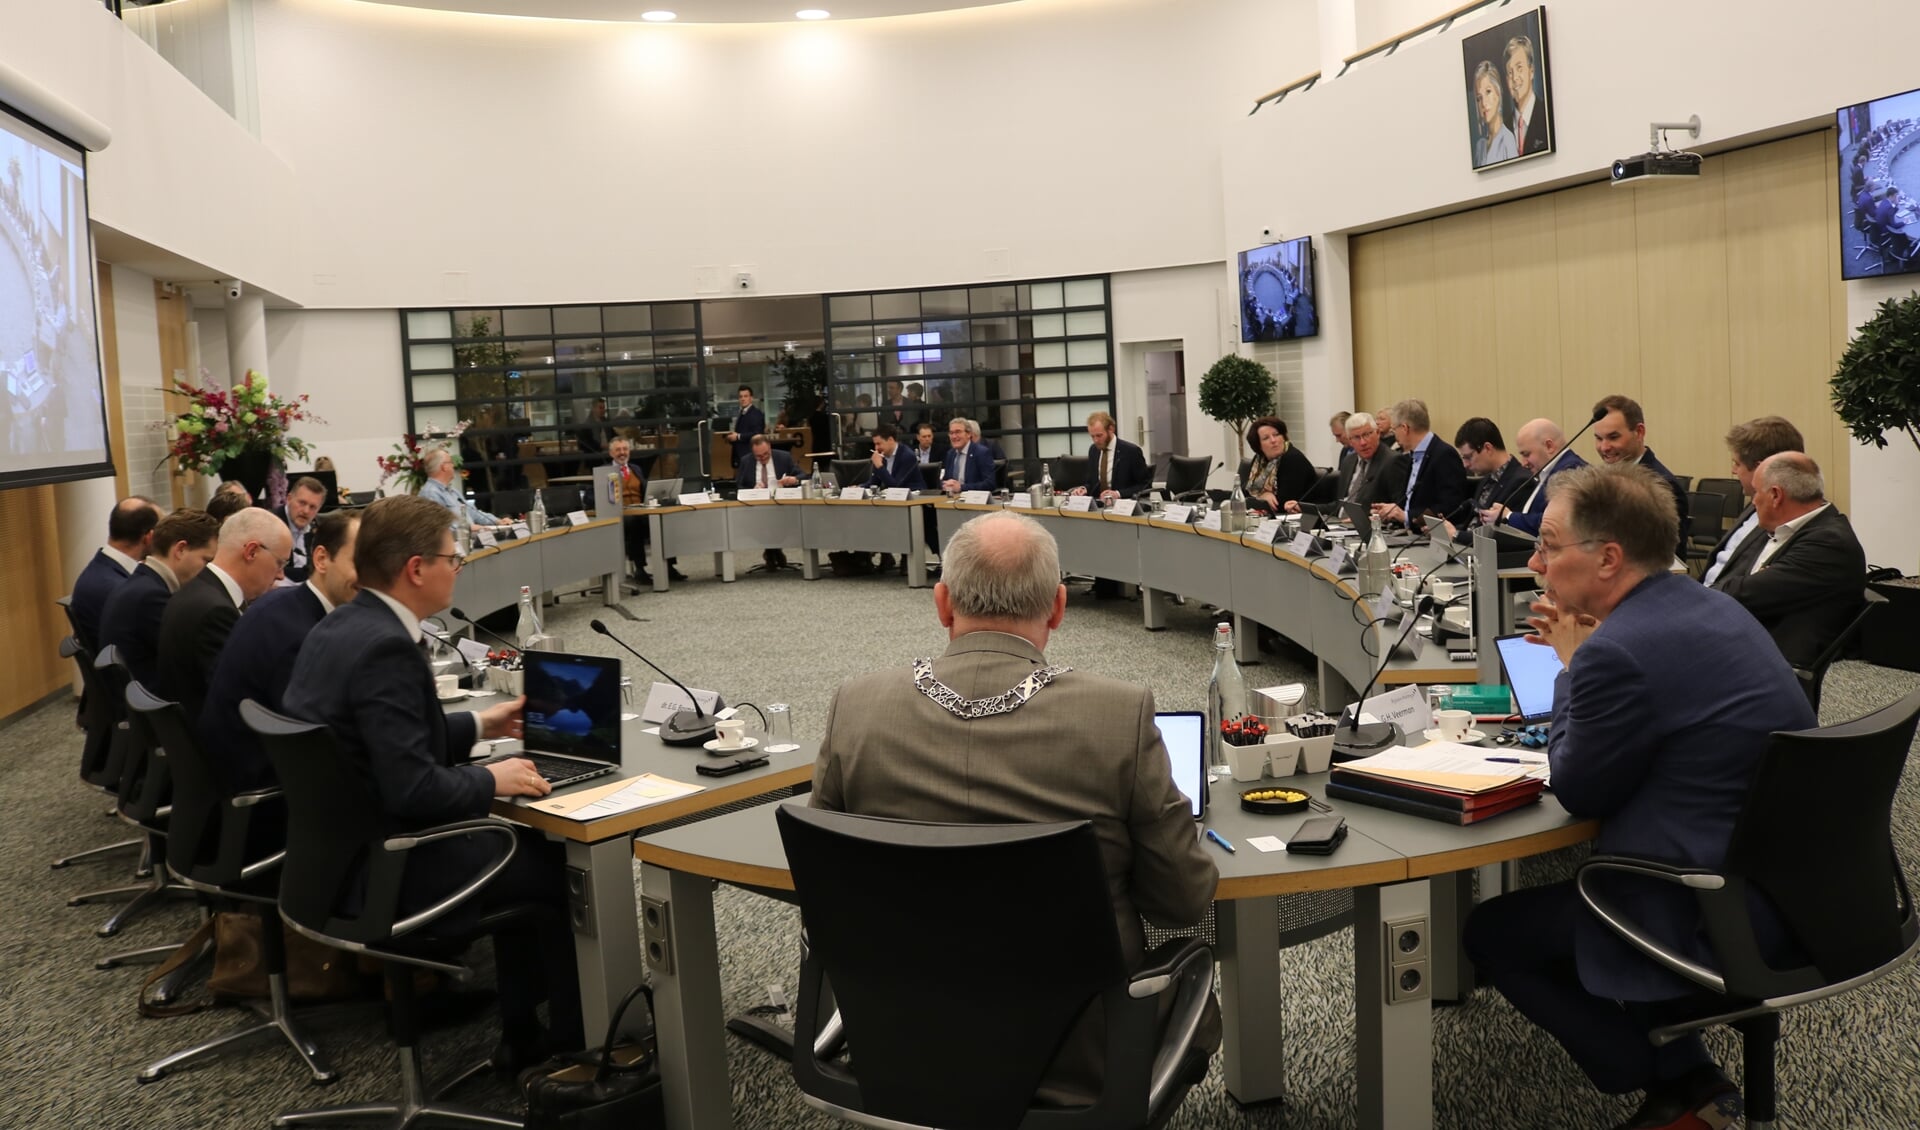 De gemeenteraad van Rijssen-Holten vergaderde voor het eerst weer in de oude opstelling in de raadszaal na de corona-pandemie.